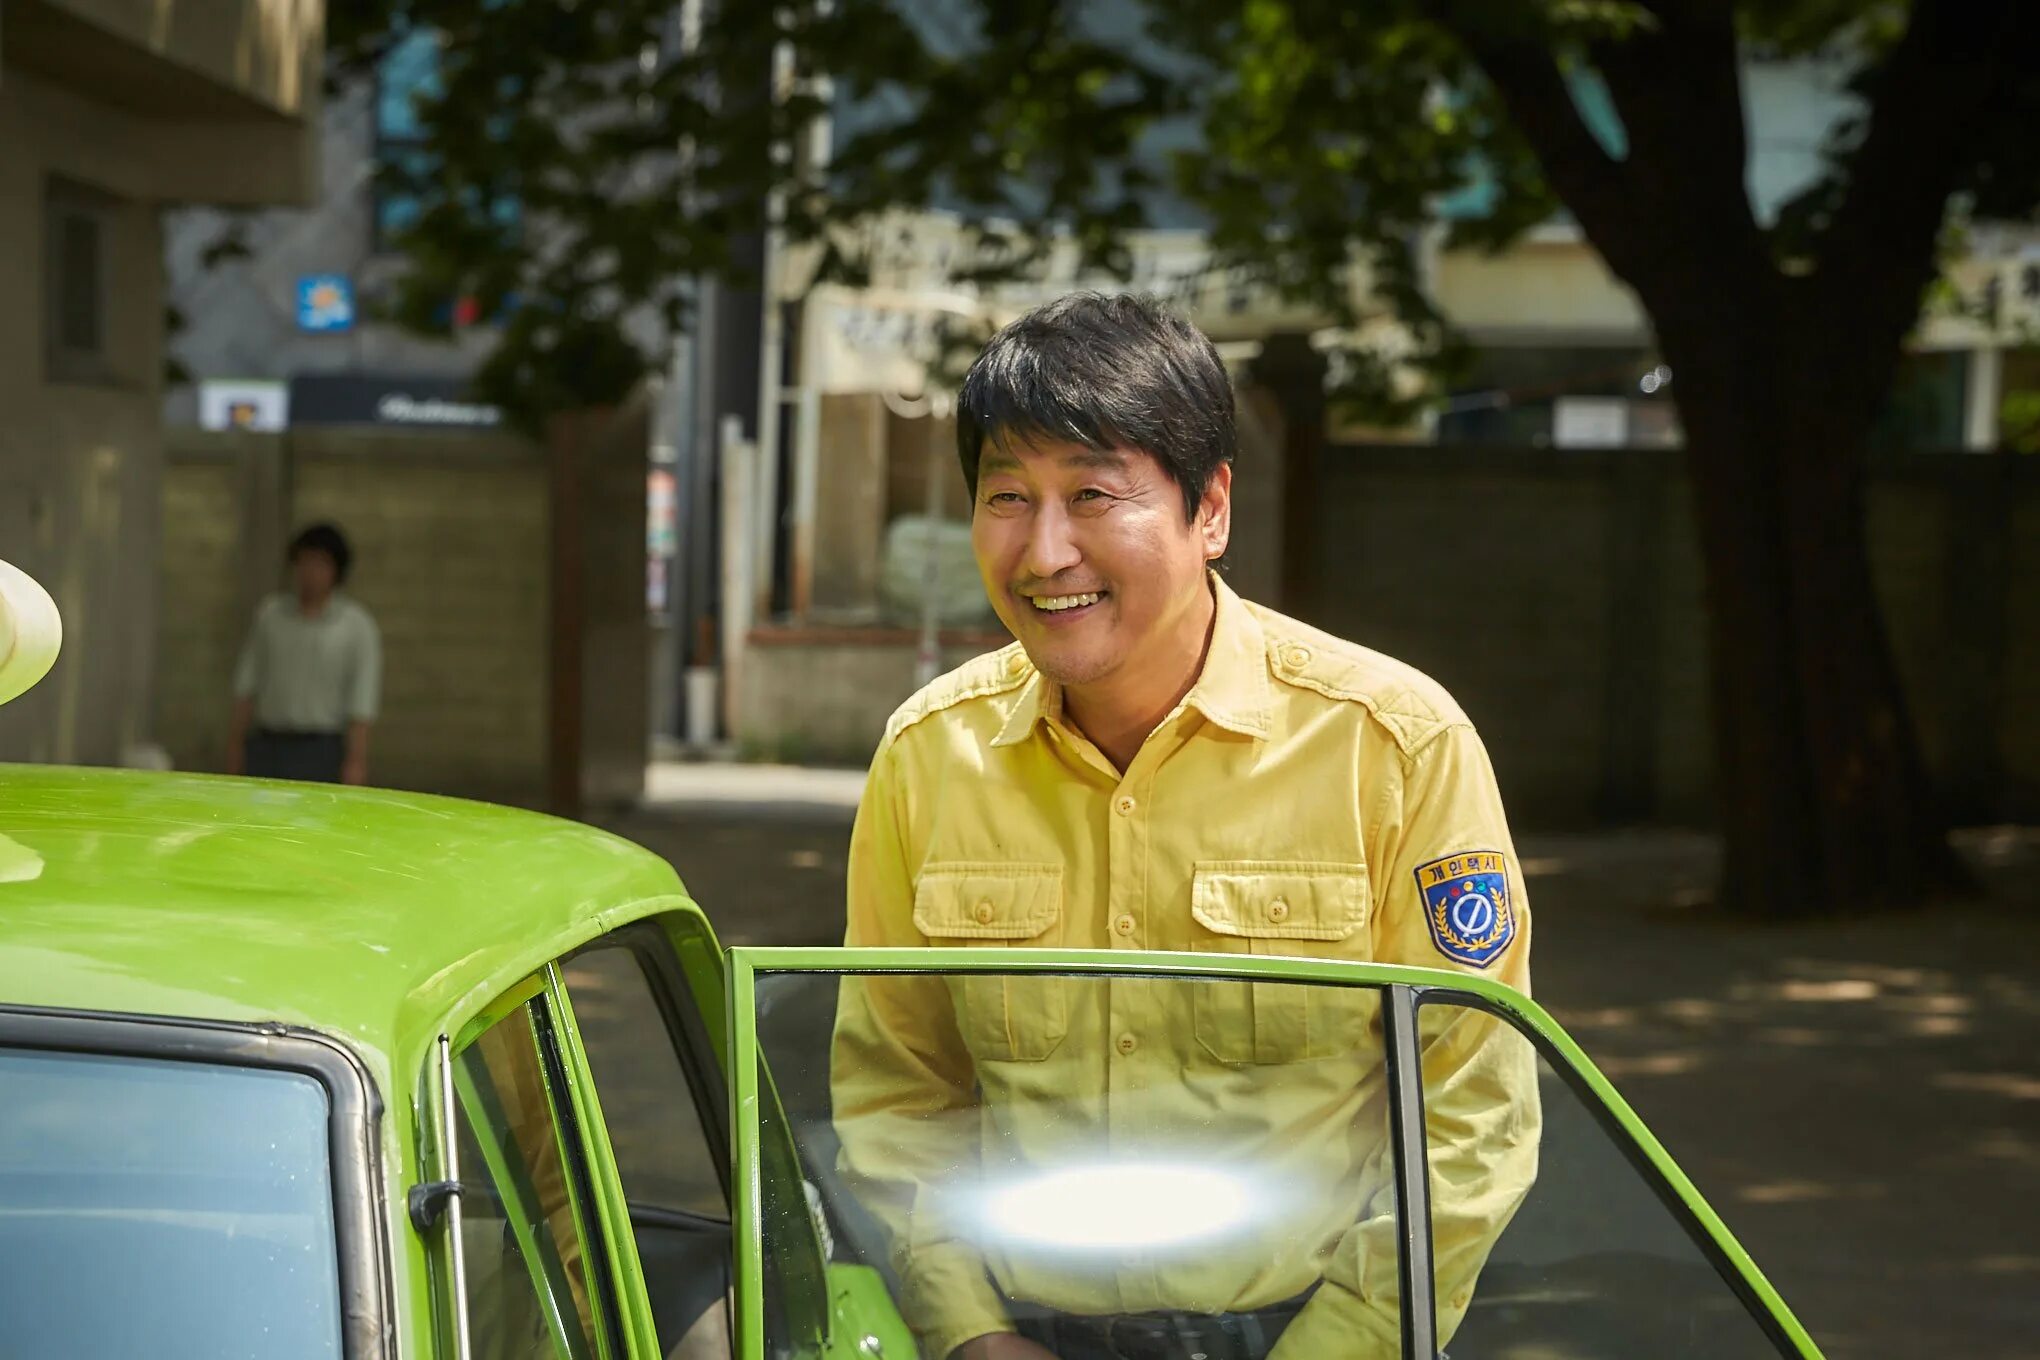 He took a taxi. Сон Кан Хо таксист.